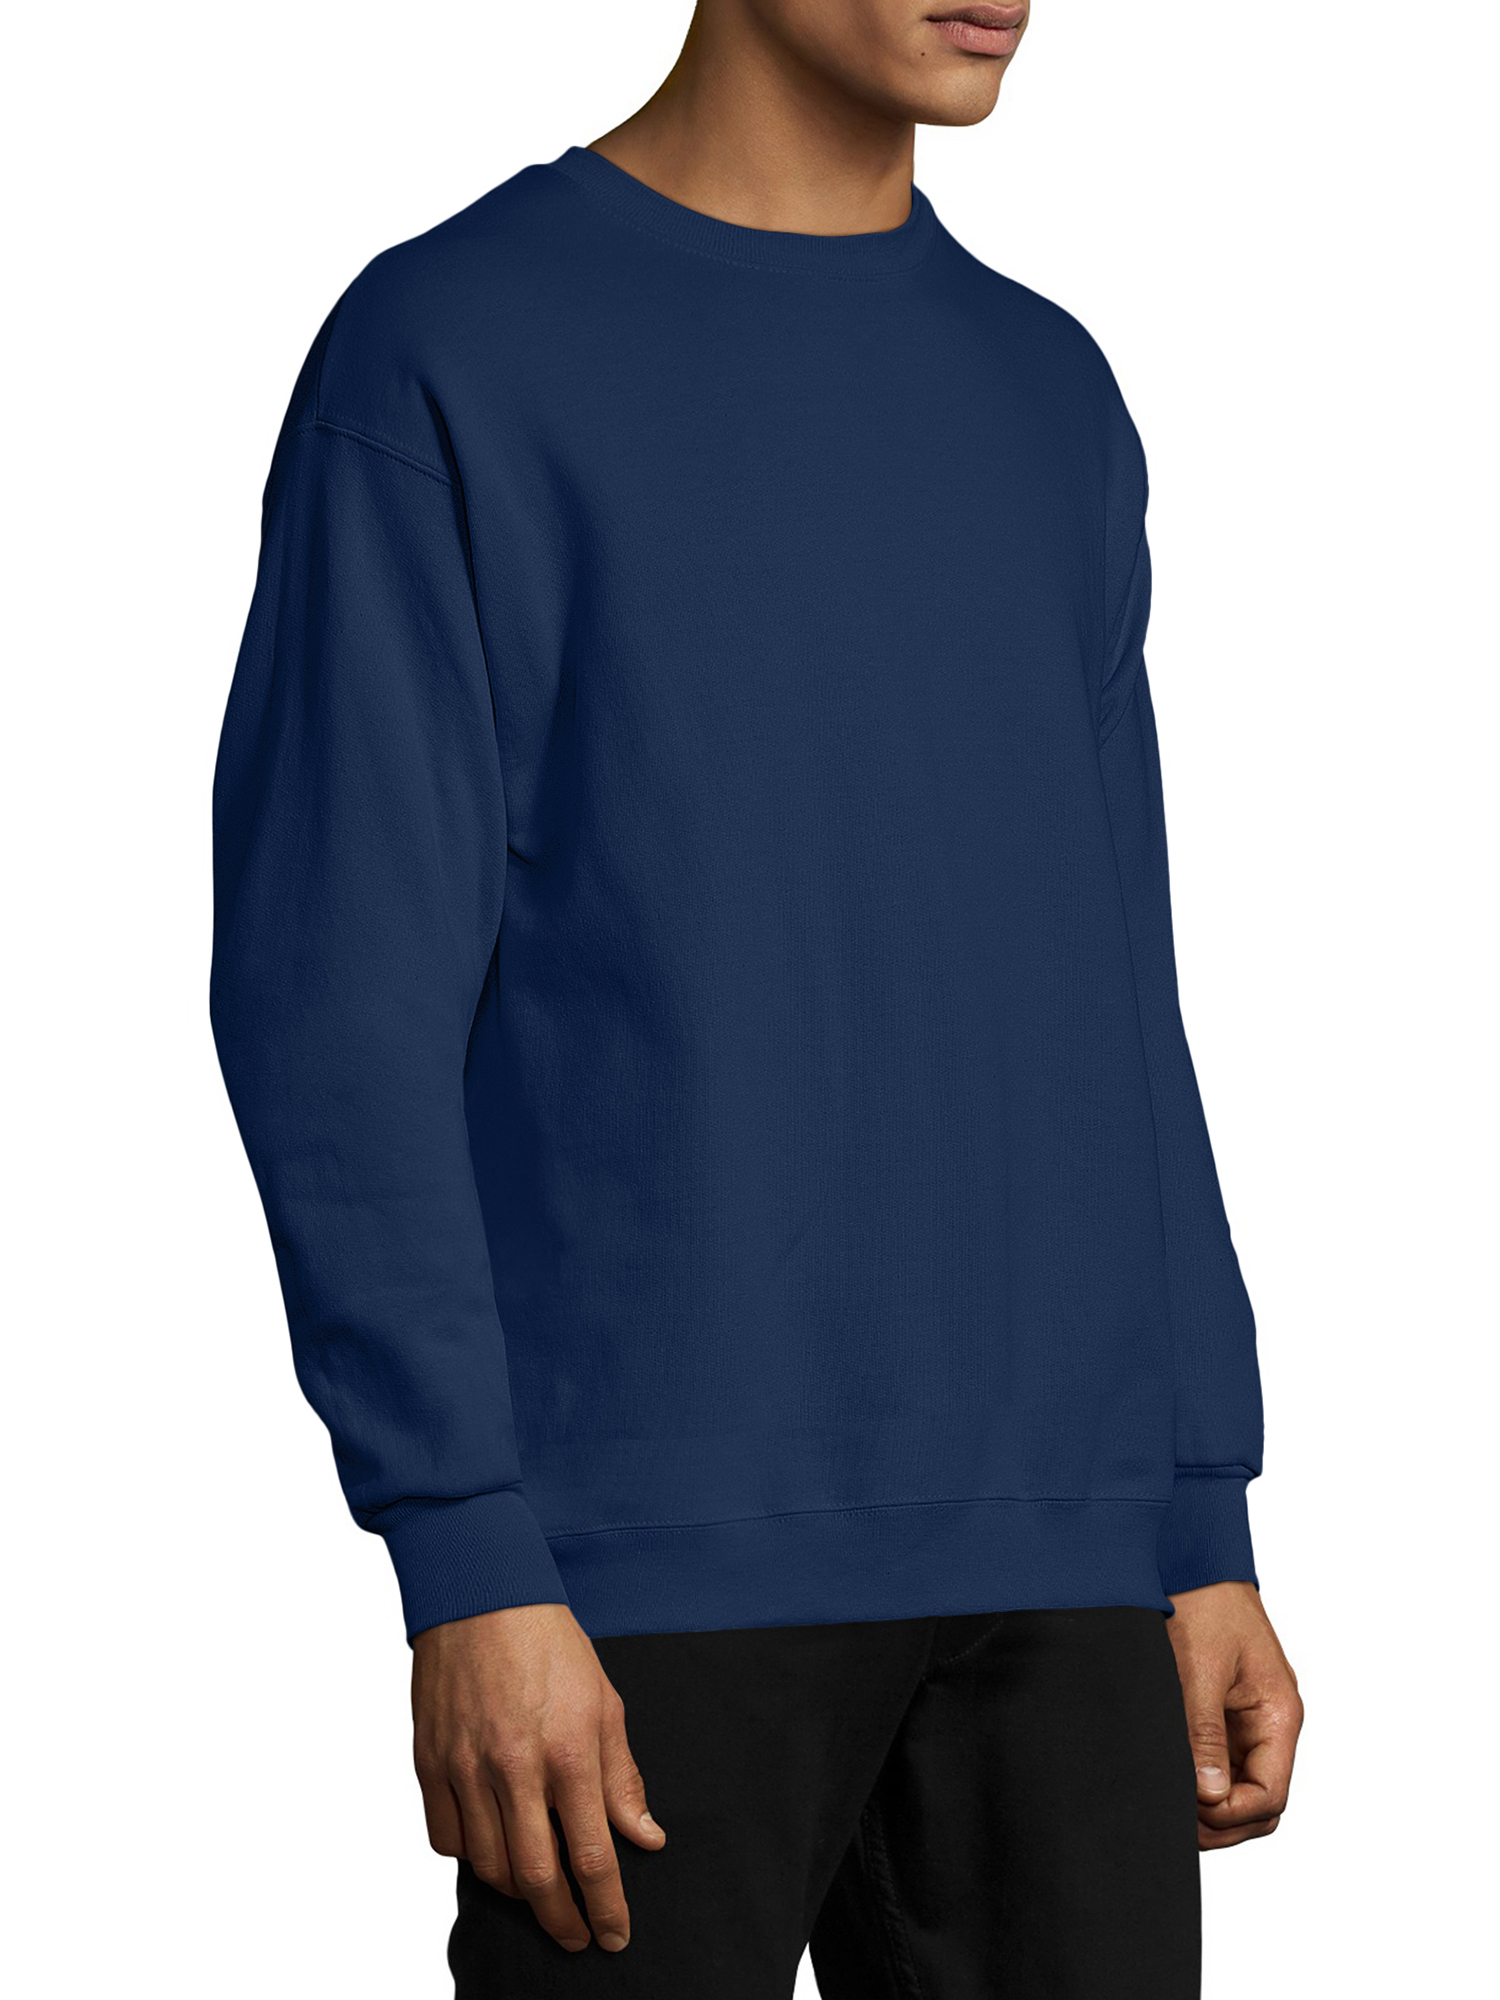 Hanes EcoSmart Crewneck Men's Sweatshirt Navy S - image 3 of 6